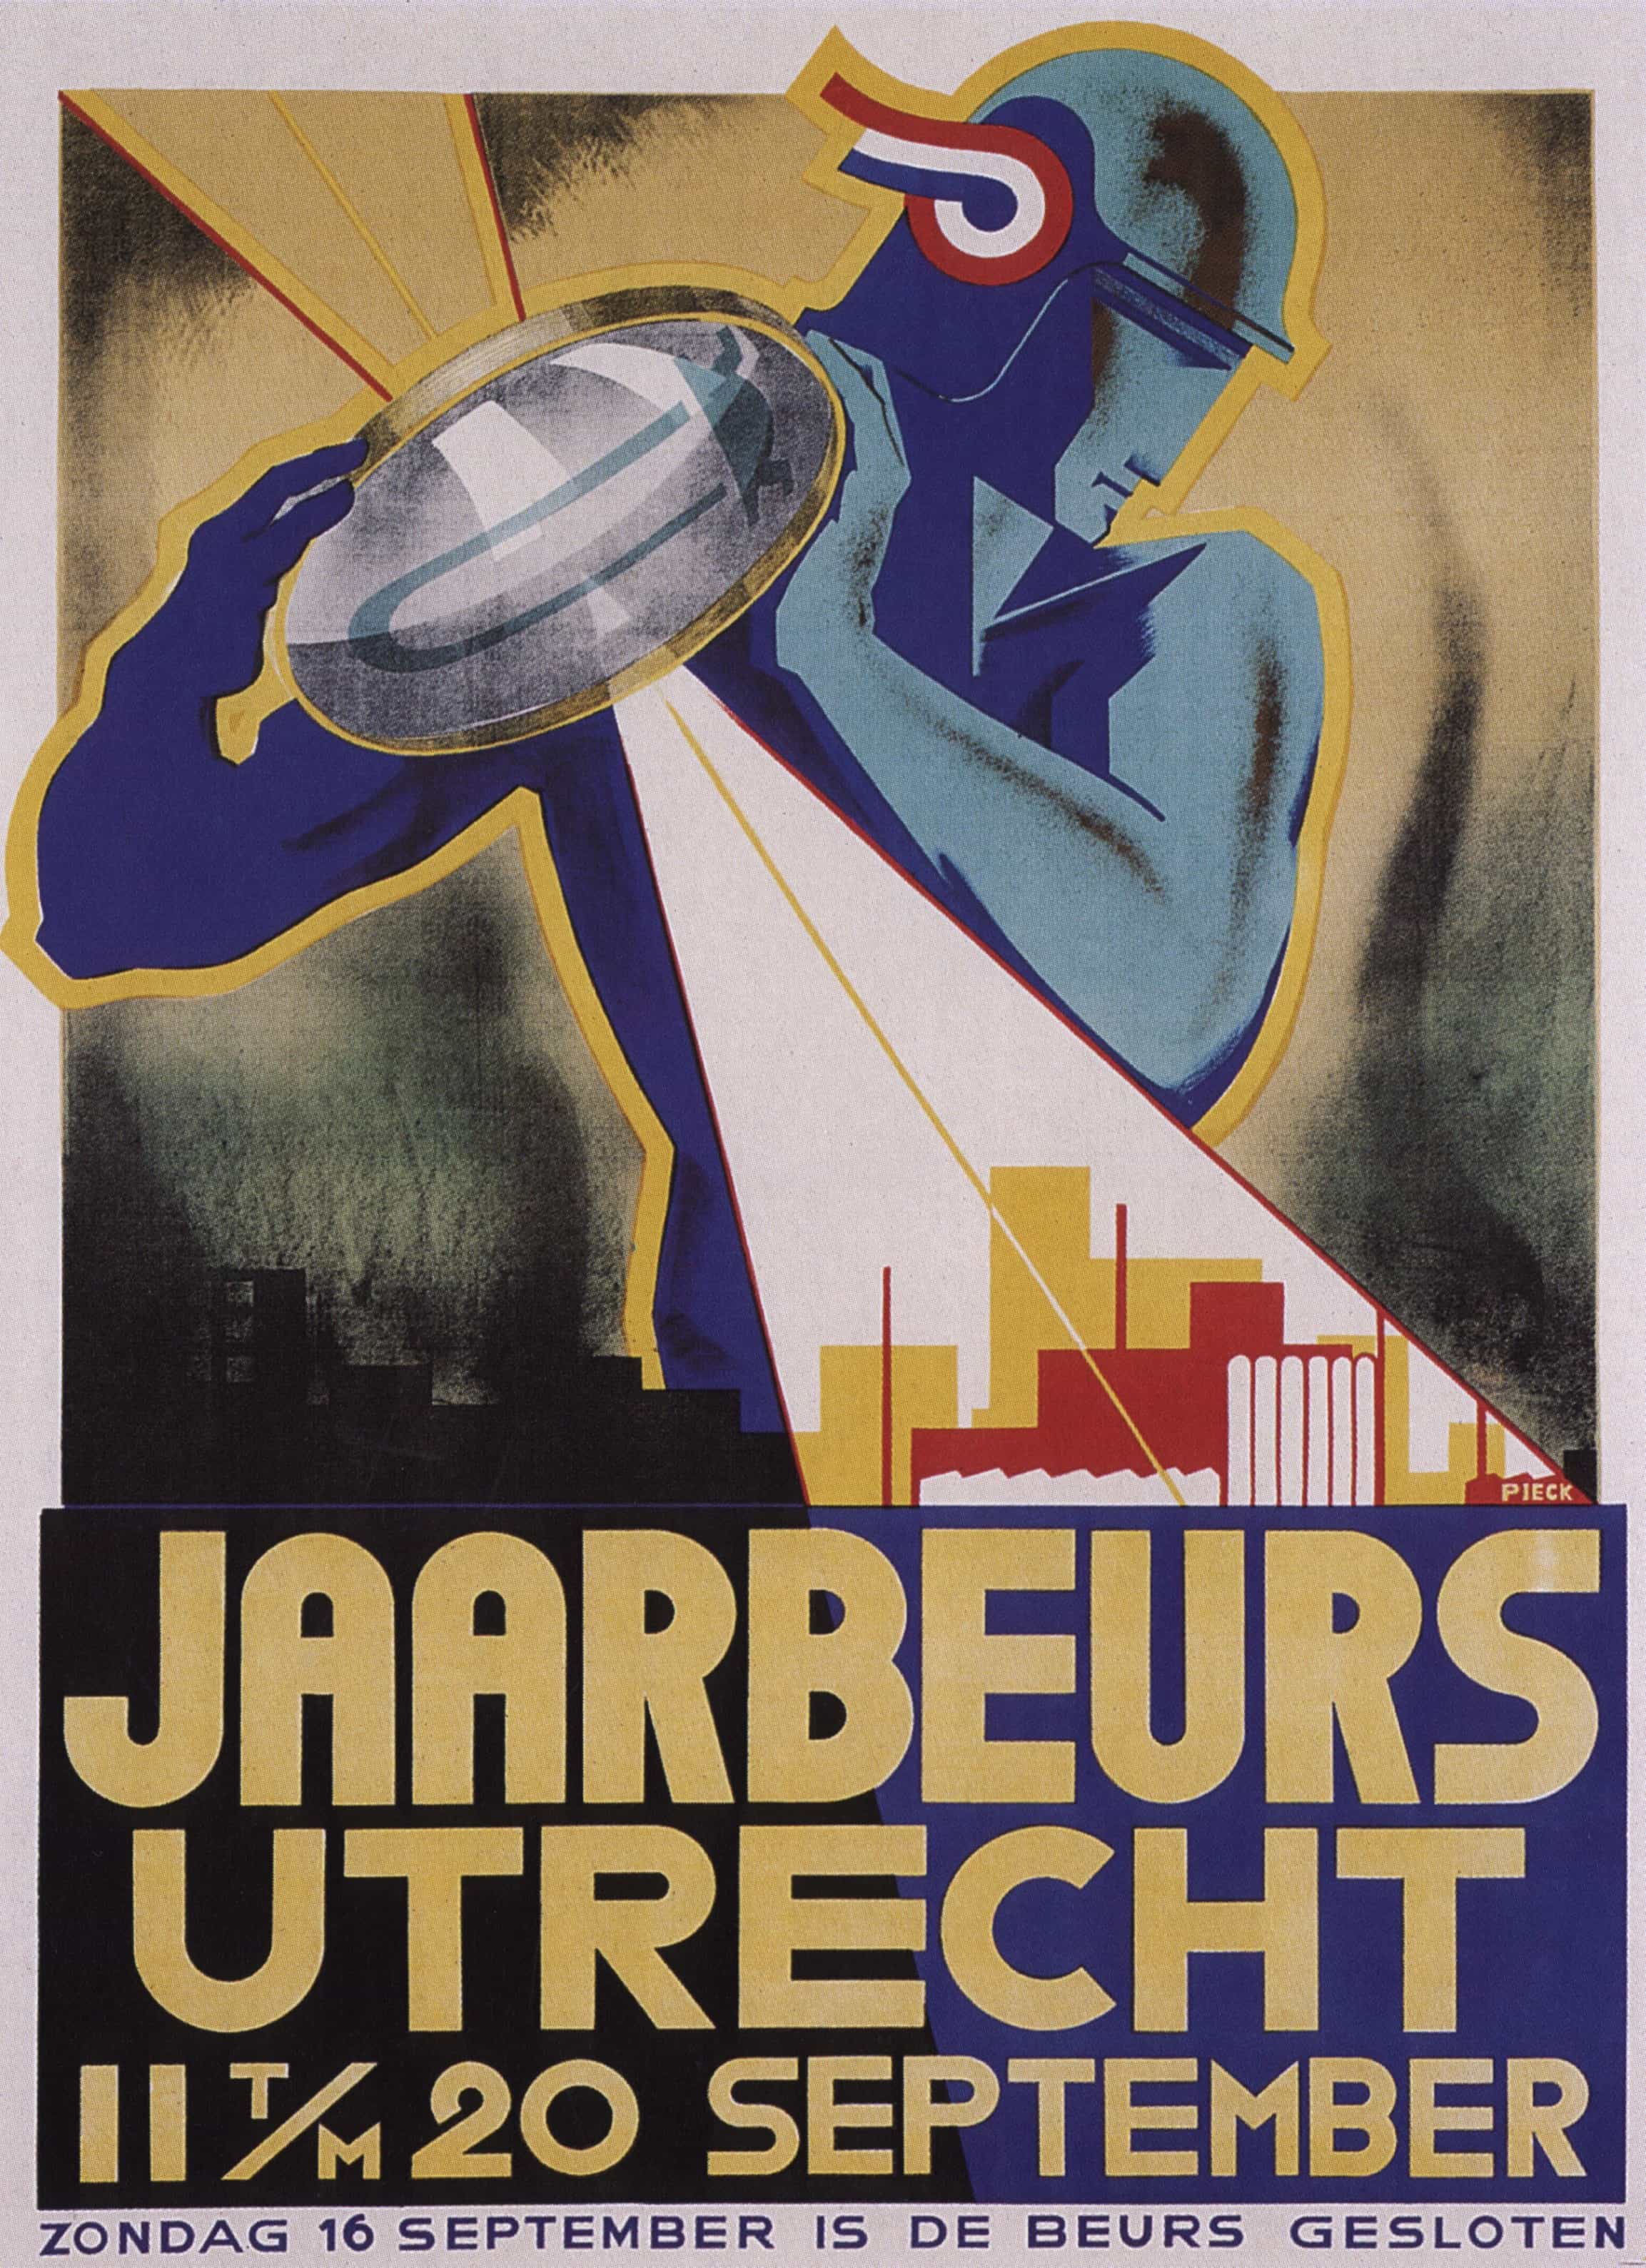 Art Deco Poster by Jaarbeeurs Utrecht's, 1920